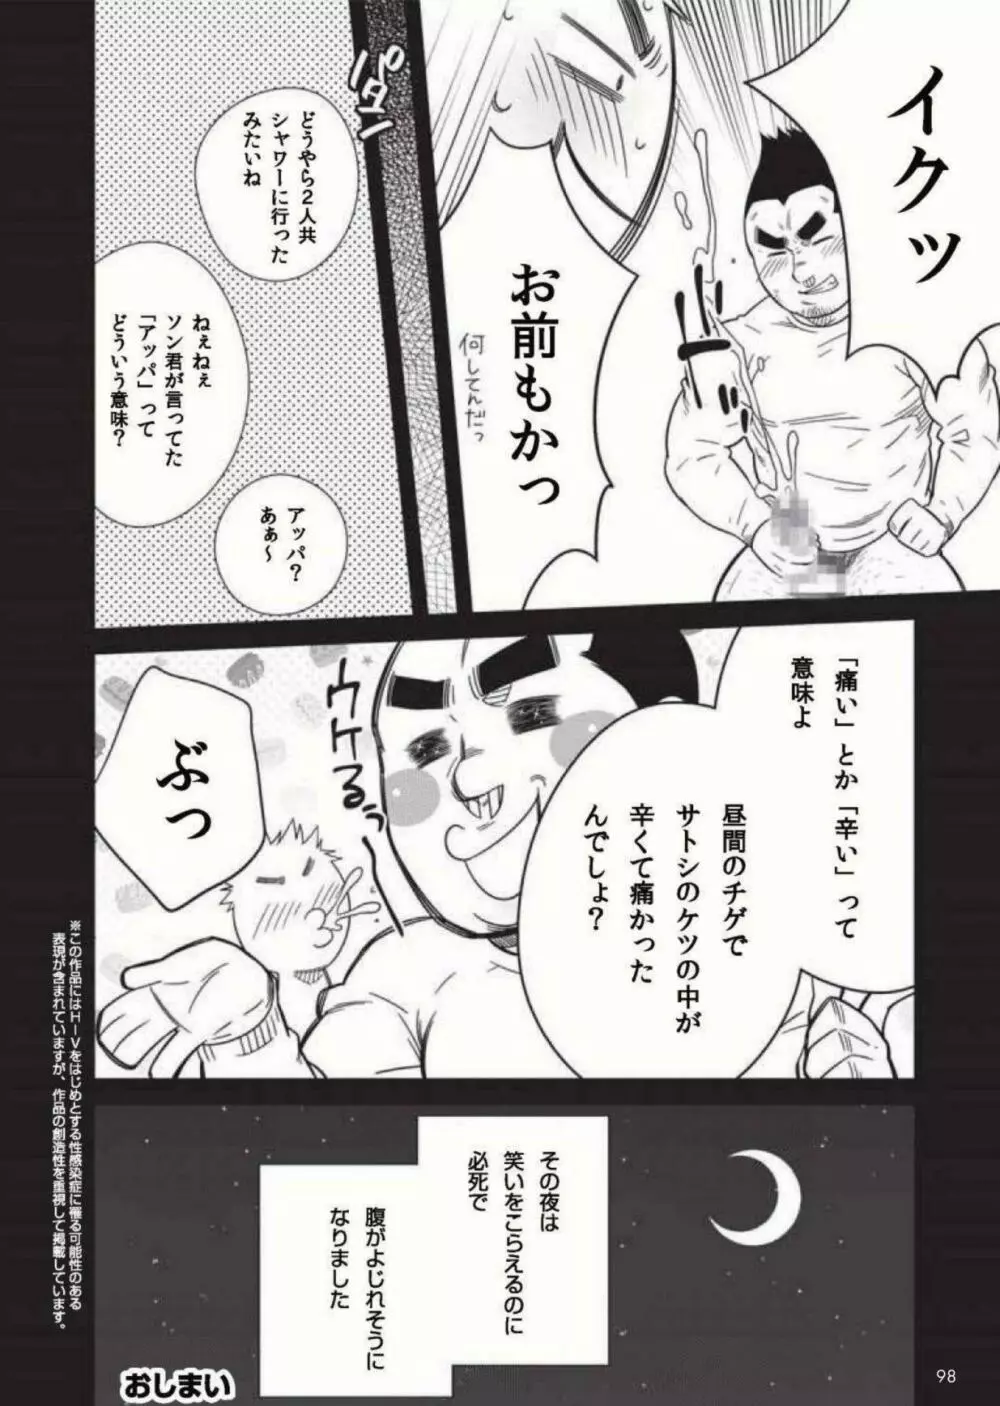 Terujirou - 晃次郎 - Badi Bʌ́di (バディ) 119 (Jan 2016) Page.8